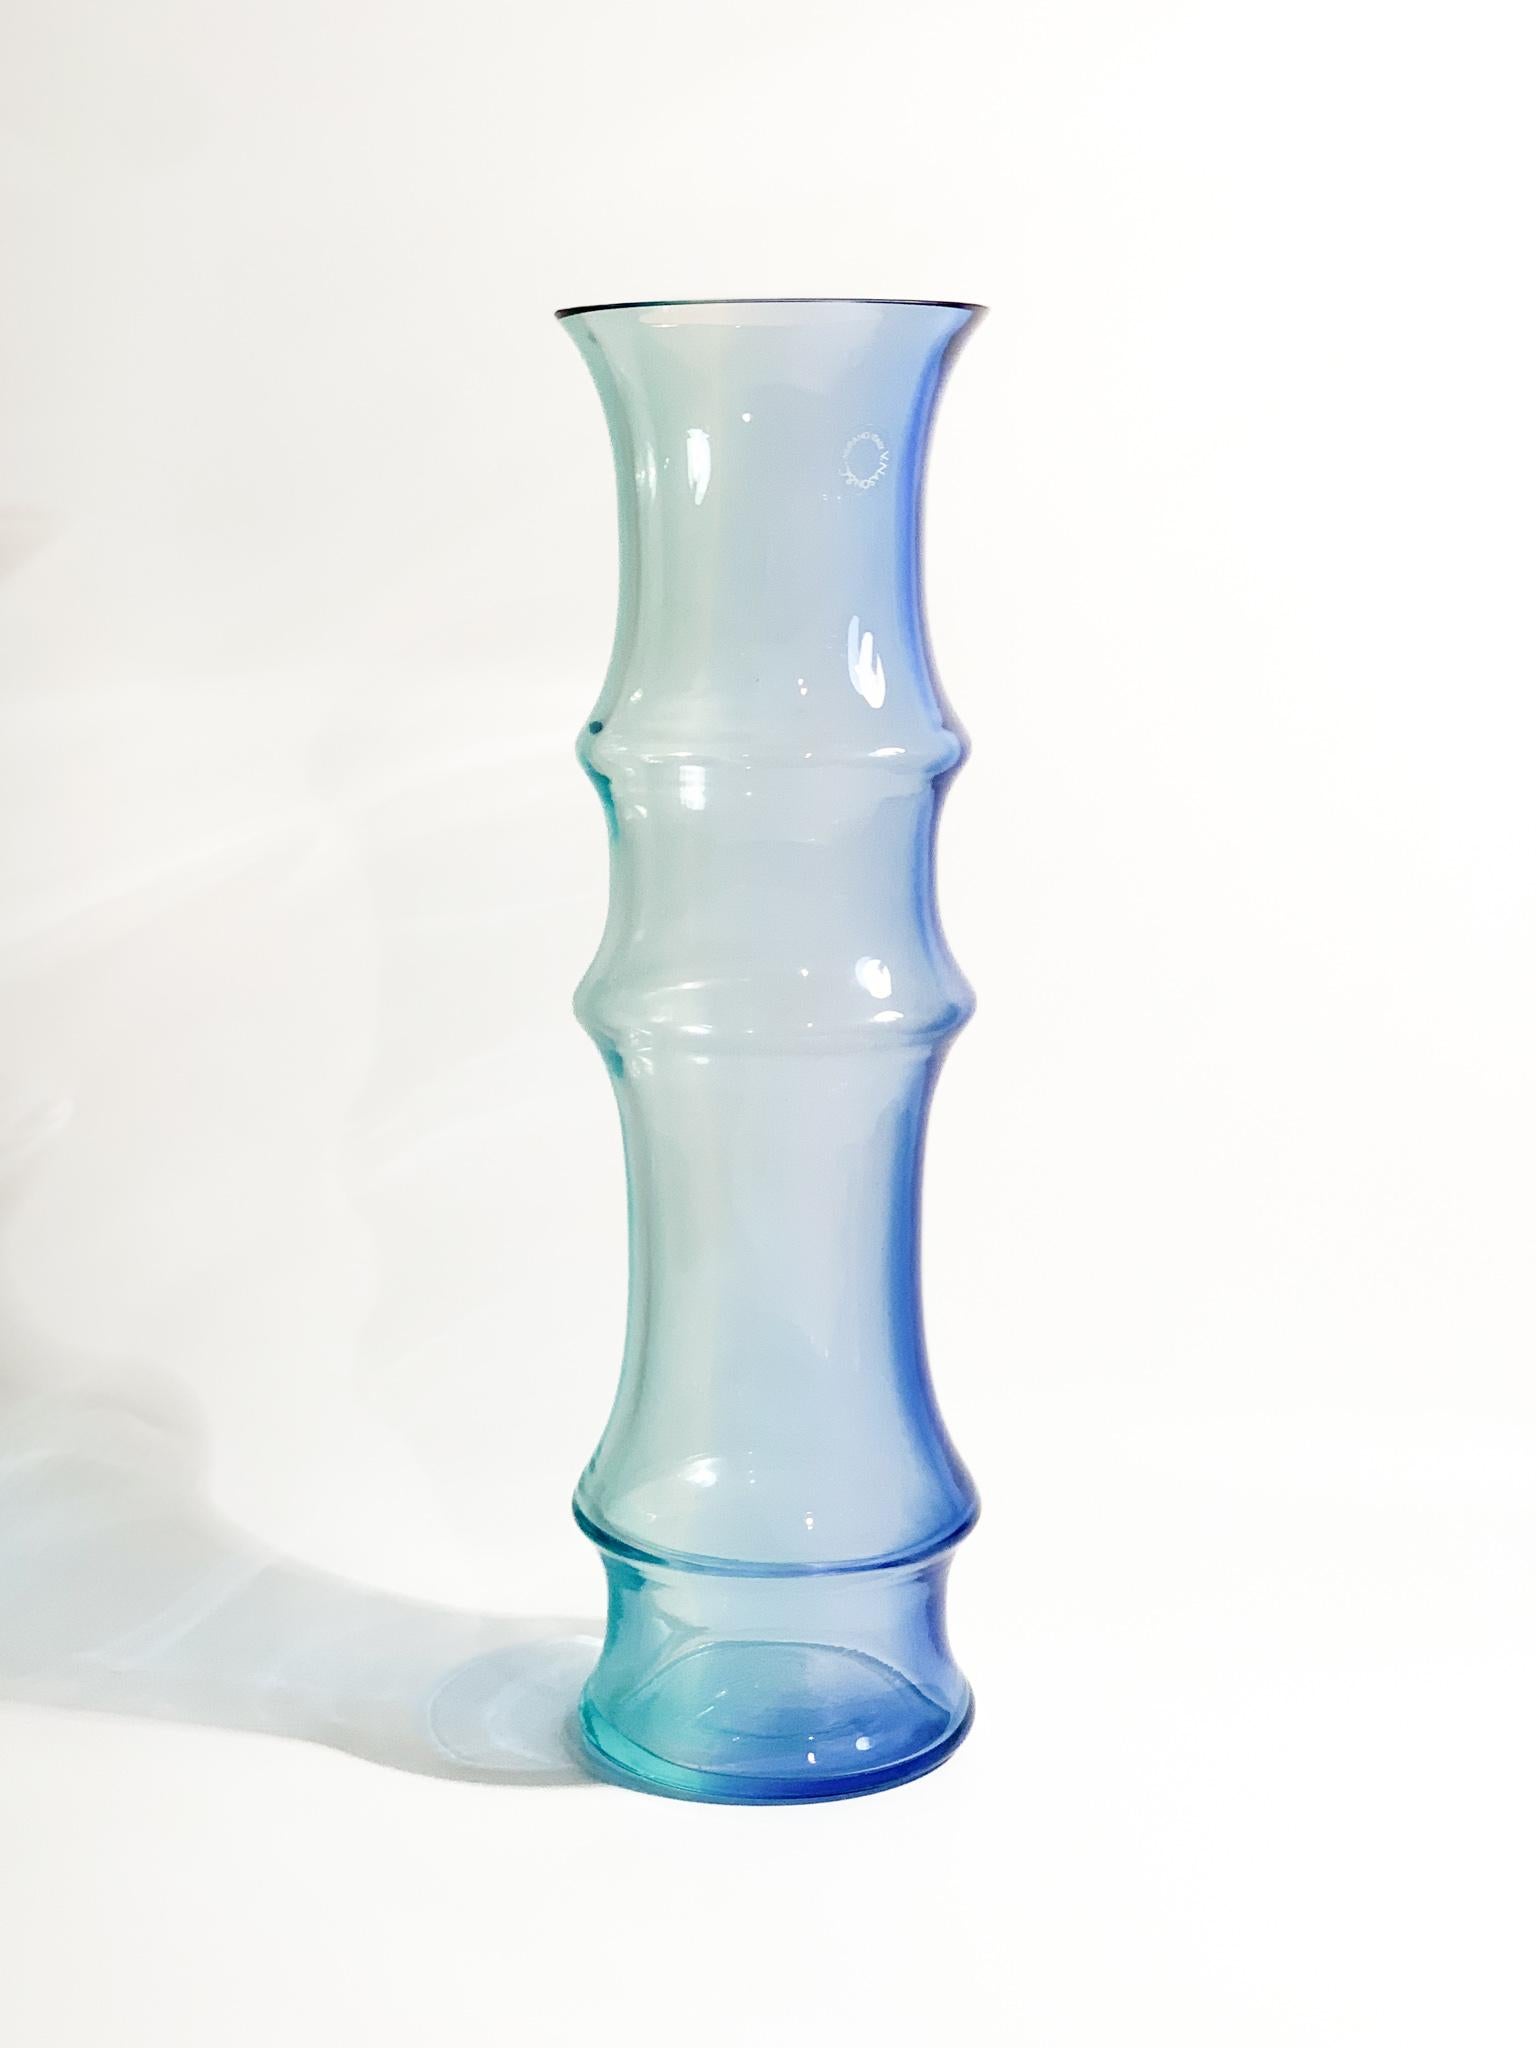 Vase en verre de Murano bleu clair et bleu, modèle Bambù, réalisé par Nason dans les années 1980.

Ø cm 12 h cm 40

Carlo Nason, né à Murano en 1935 d'une des plus anciennes familles de verriers de l'île, il était un grand maître verrier. Il grandit